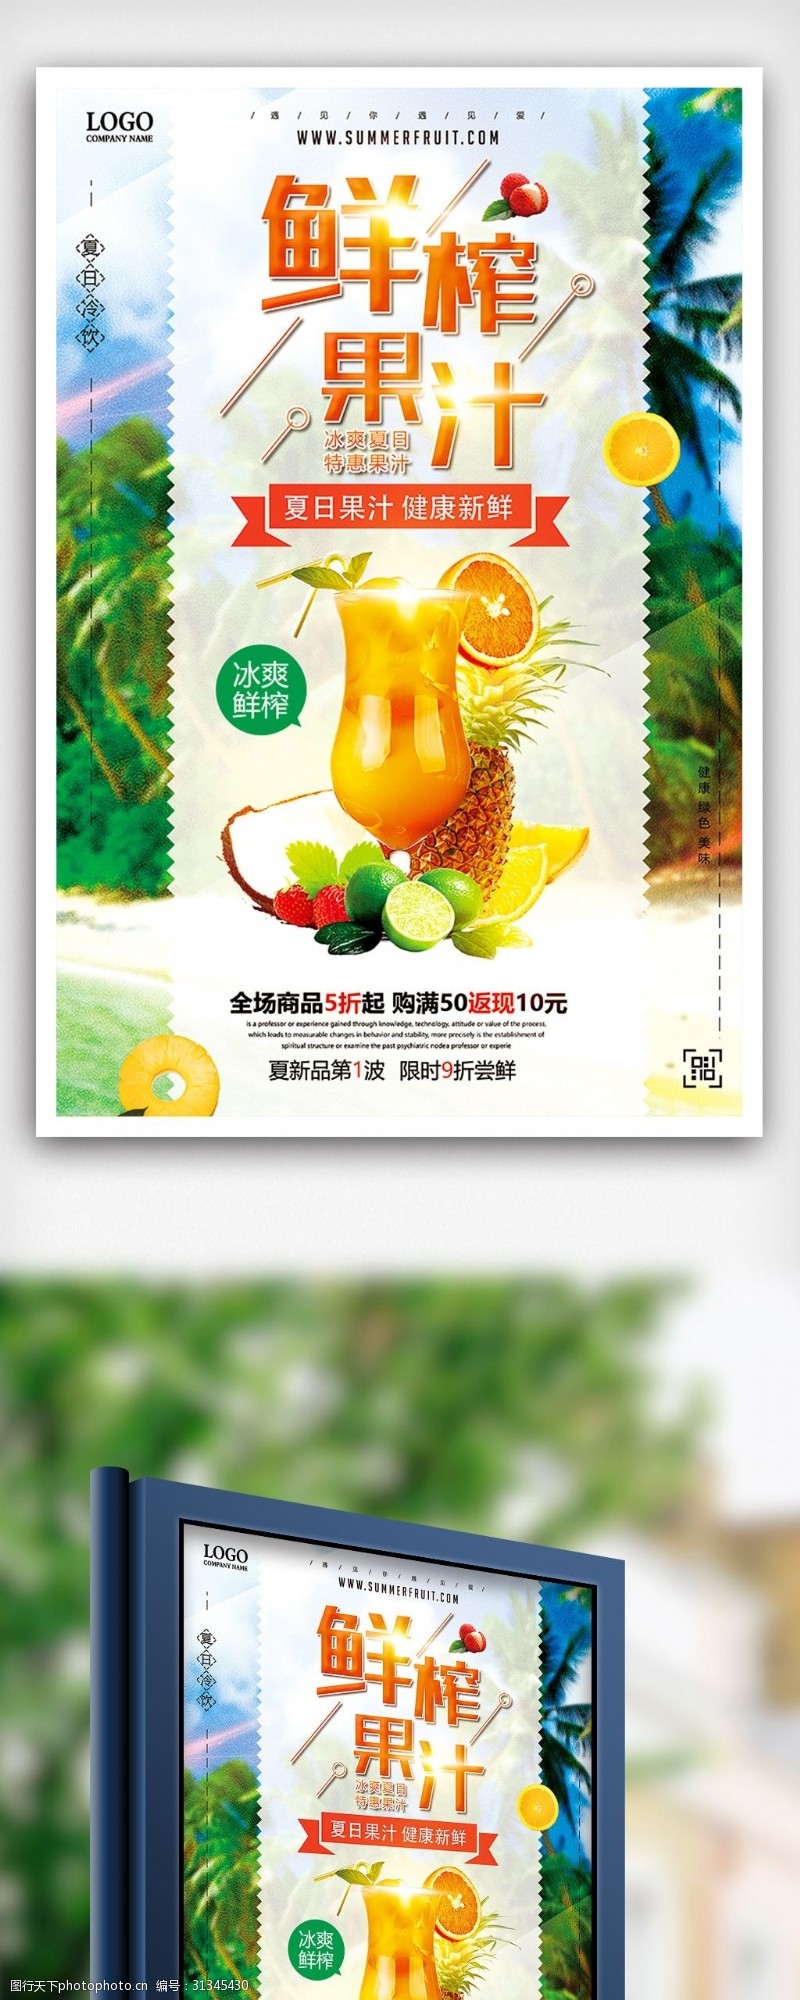 鲜榨果汁免费下载夏季鲜榨果汁清凉上市促销海报